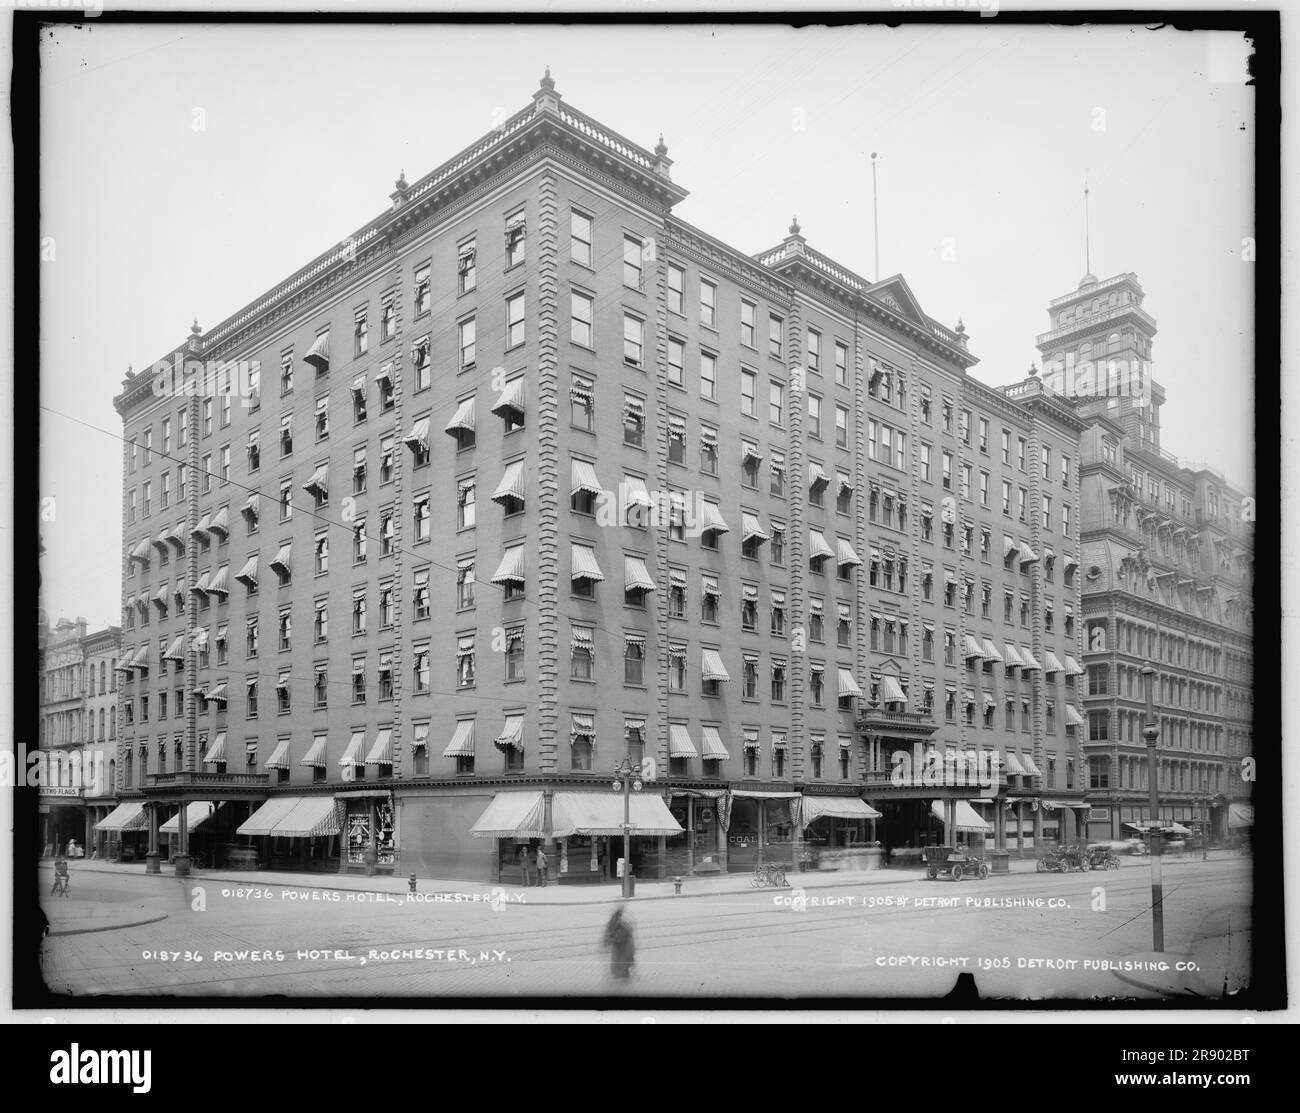 Powers Hotel, Rochester, New York, c1905. 'Powers Fire proof Hotel' wurde 1883 eröffnet. Es gab vier Speisesäle, einen Bankettsaal mit Platz für 500 Personen und fast ein Dutzend Geschäfte, die sich von der Lobby öffnen. Zu den berühmten Gästen des Powers gehörten Mark Twain, Cornelius Vanderbilt, Babe Ruth, Franklin D. Roosevelt und Lou Gehrig. In den Läden werden Schreibmaschinen, Kohle und Süßwaren verkauft. Stockfoto